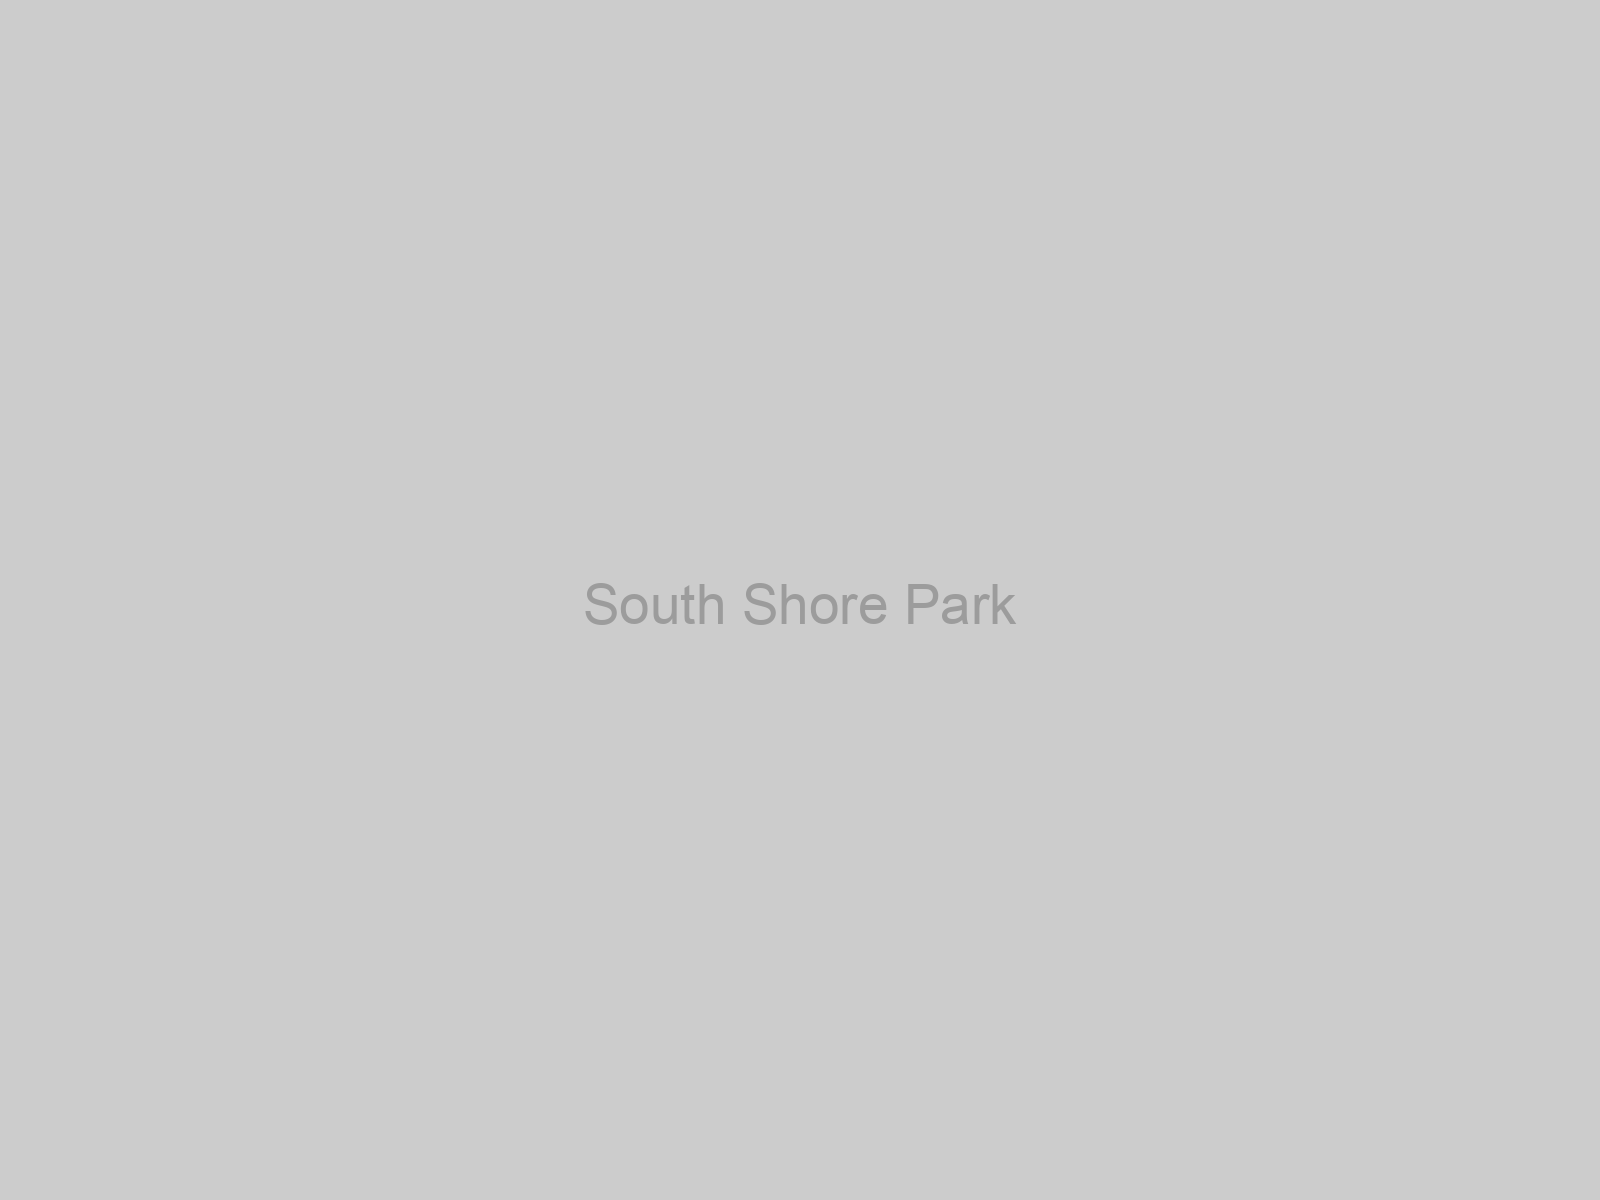 South Shore Park